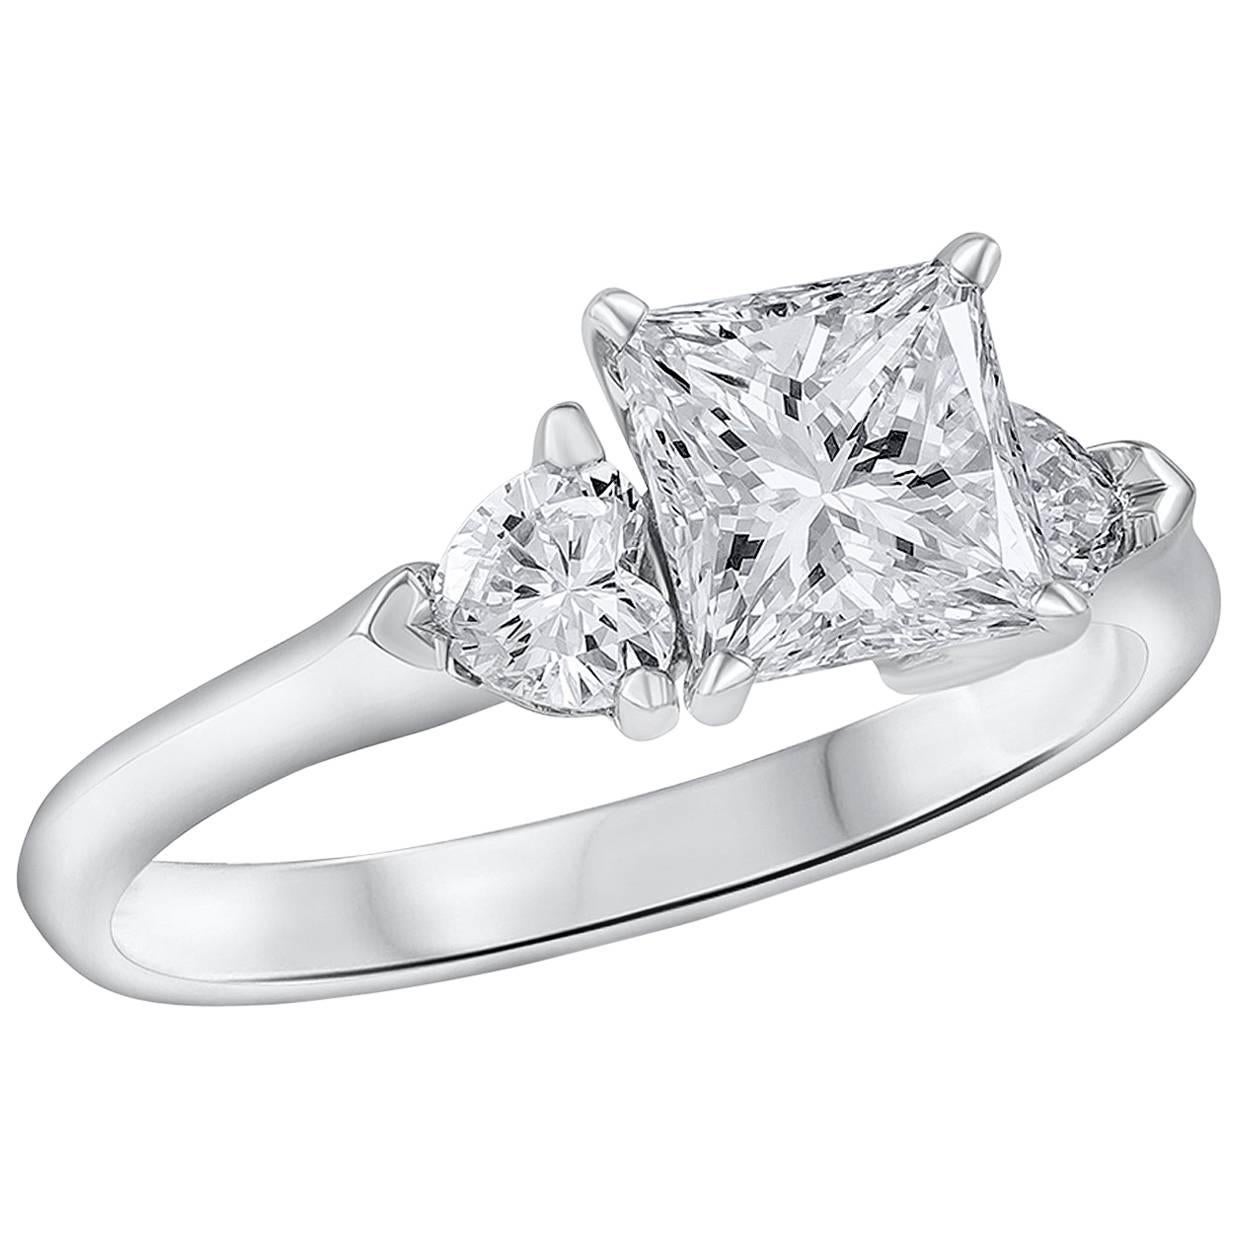 Zeigt einen 1,32 Karat schweren Diamanten im Prinzessschliff, flankiert von einem herzförmigen Diamanten auf jeder Seite. Die herzförmigen Diamanten symbolisieren die beiden Herzen, die sich bei der Verlobung vereinen. GIA zertifiziert den